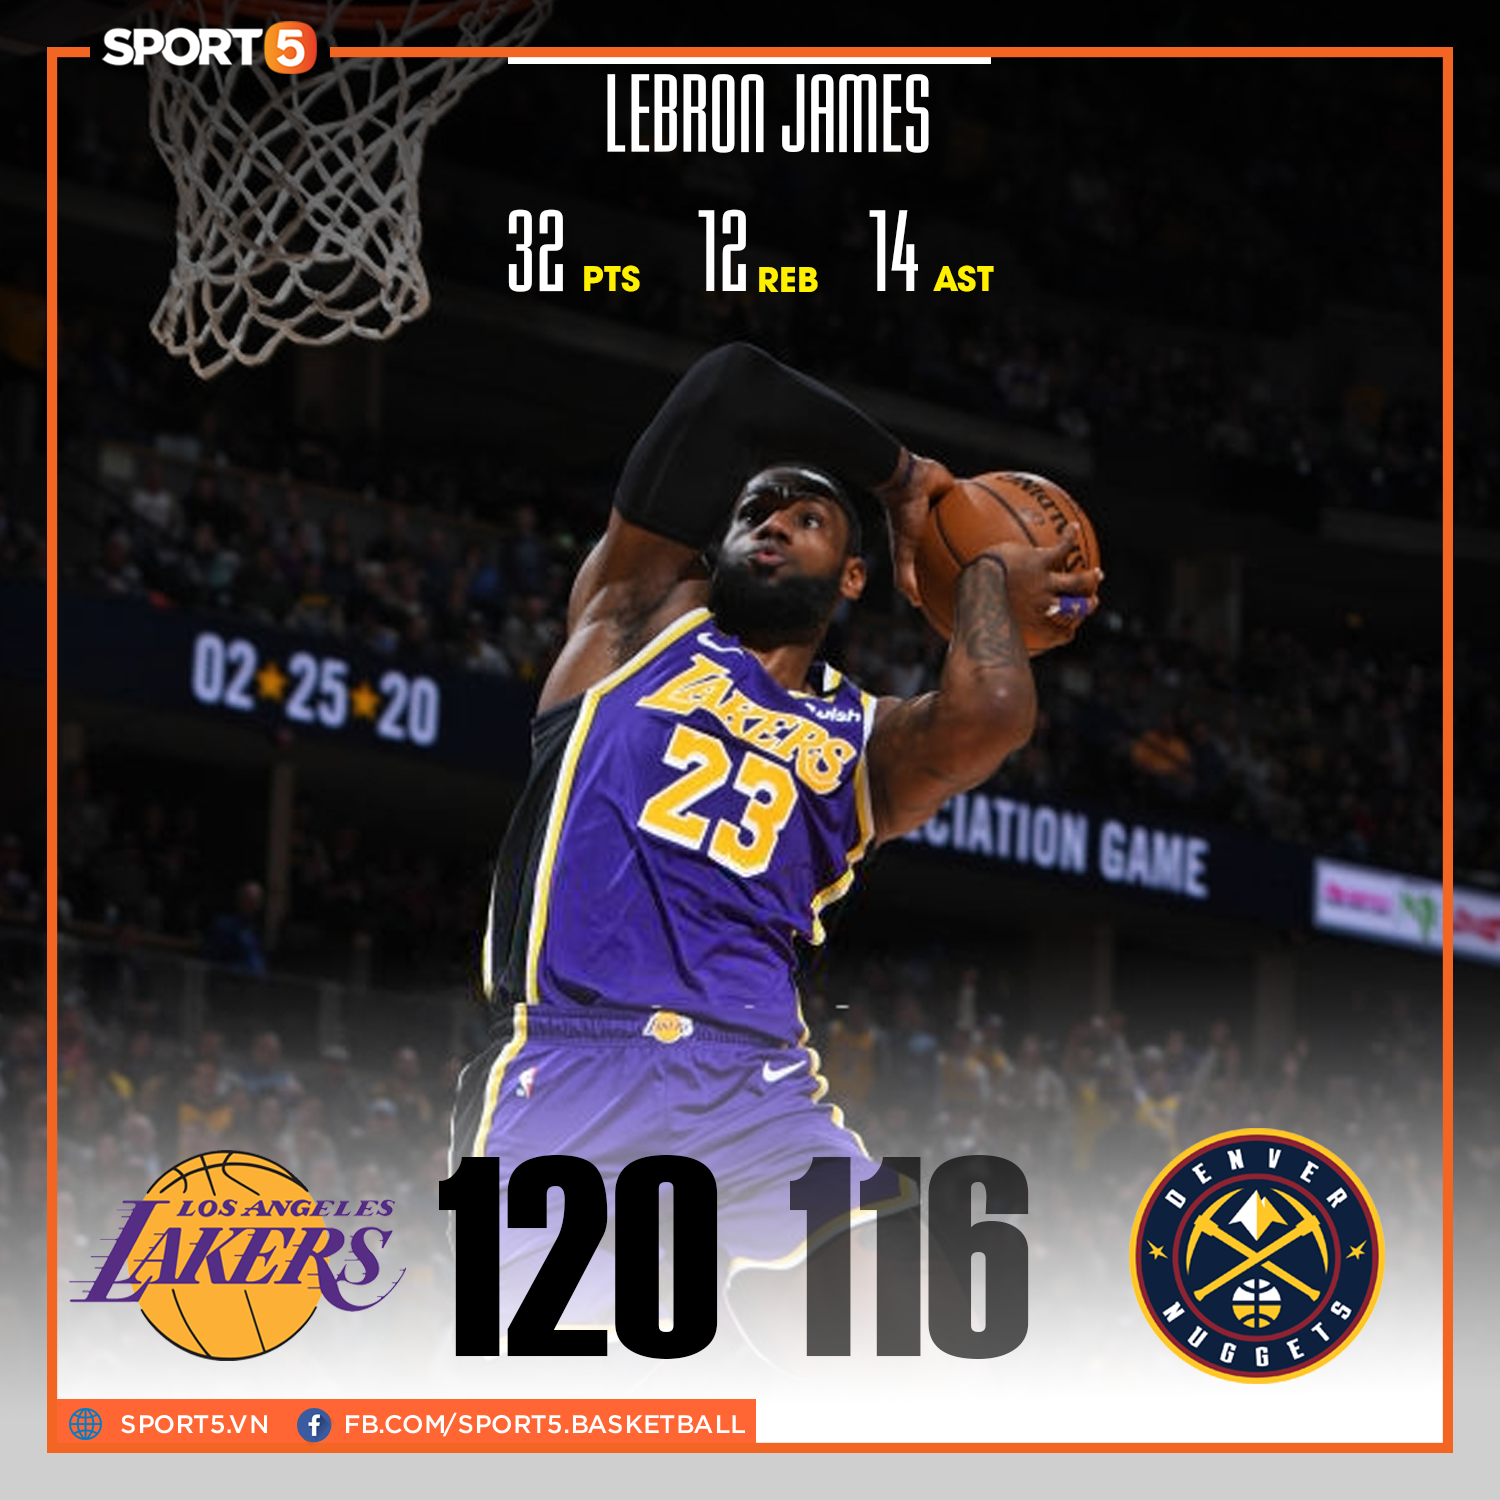 Tỏa sáng trong hiệp phụ, LeBron James và Anthony Davis đem về chiến thắng nghẹt thở cho Los Angeles Lakers trước Denver Nuggets - Ảnh 1.